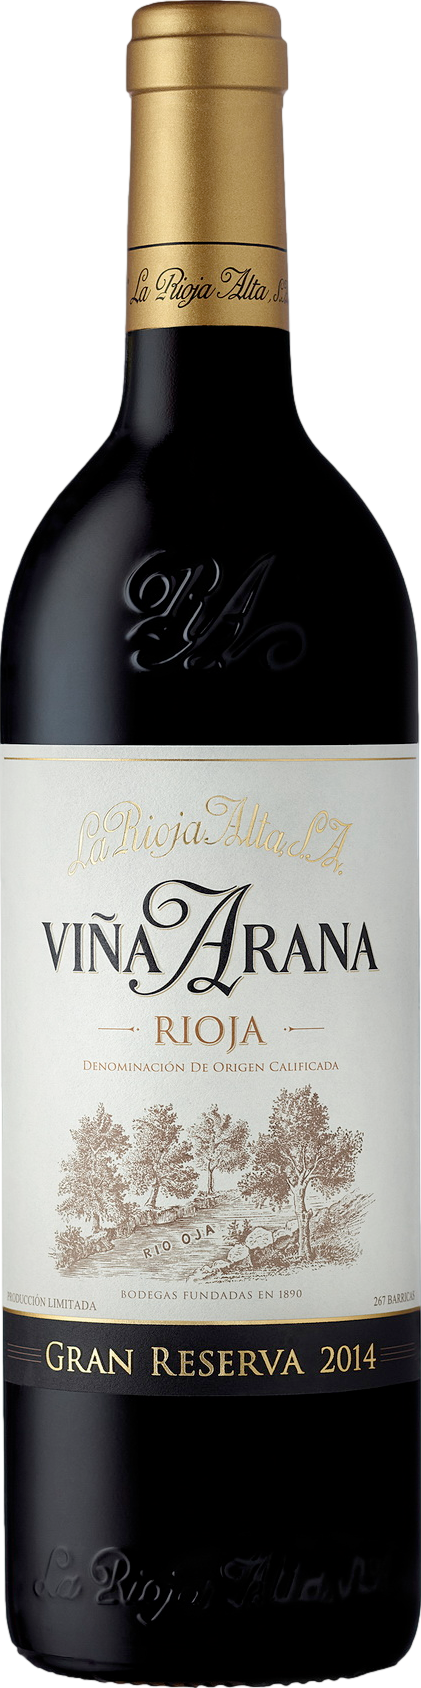 La Rioja Alta Gran Reserva Vina Arana 2014